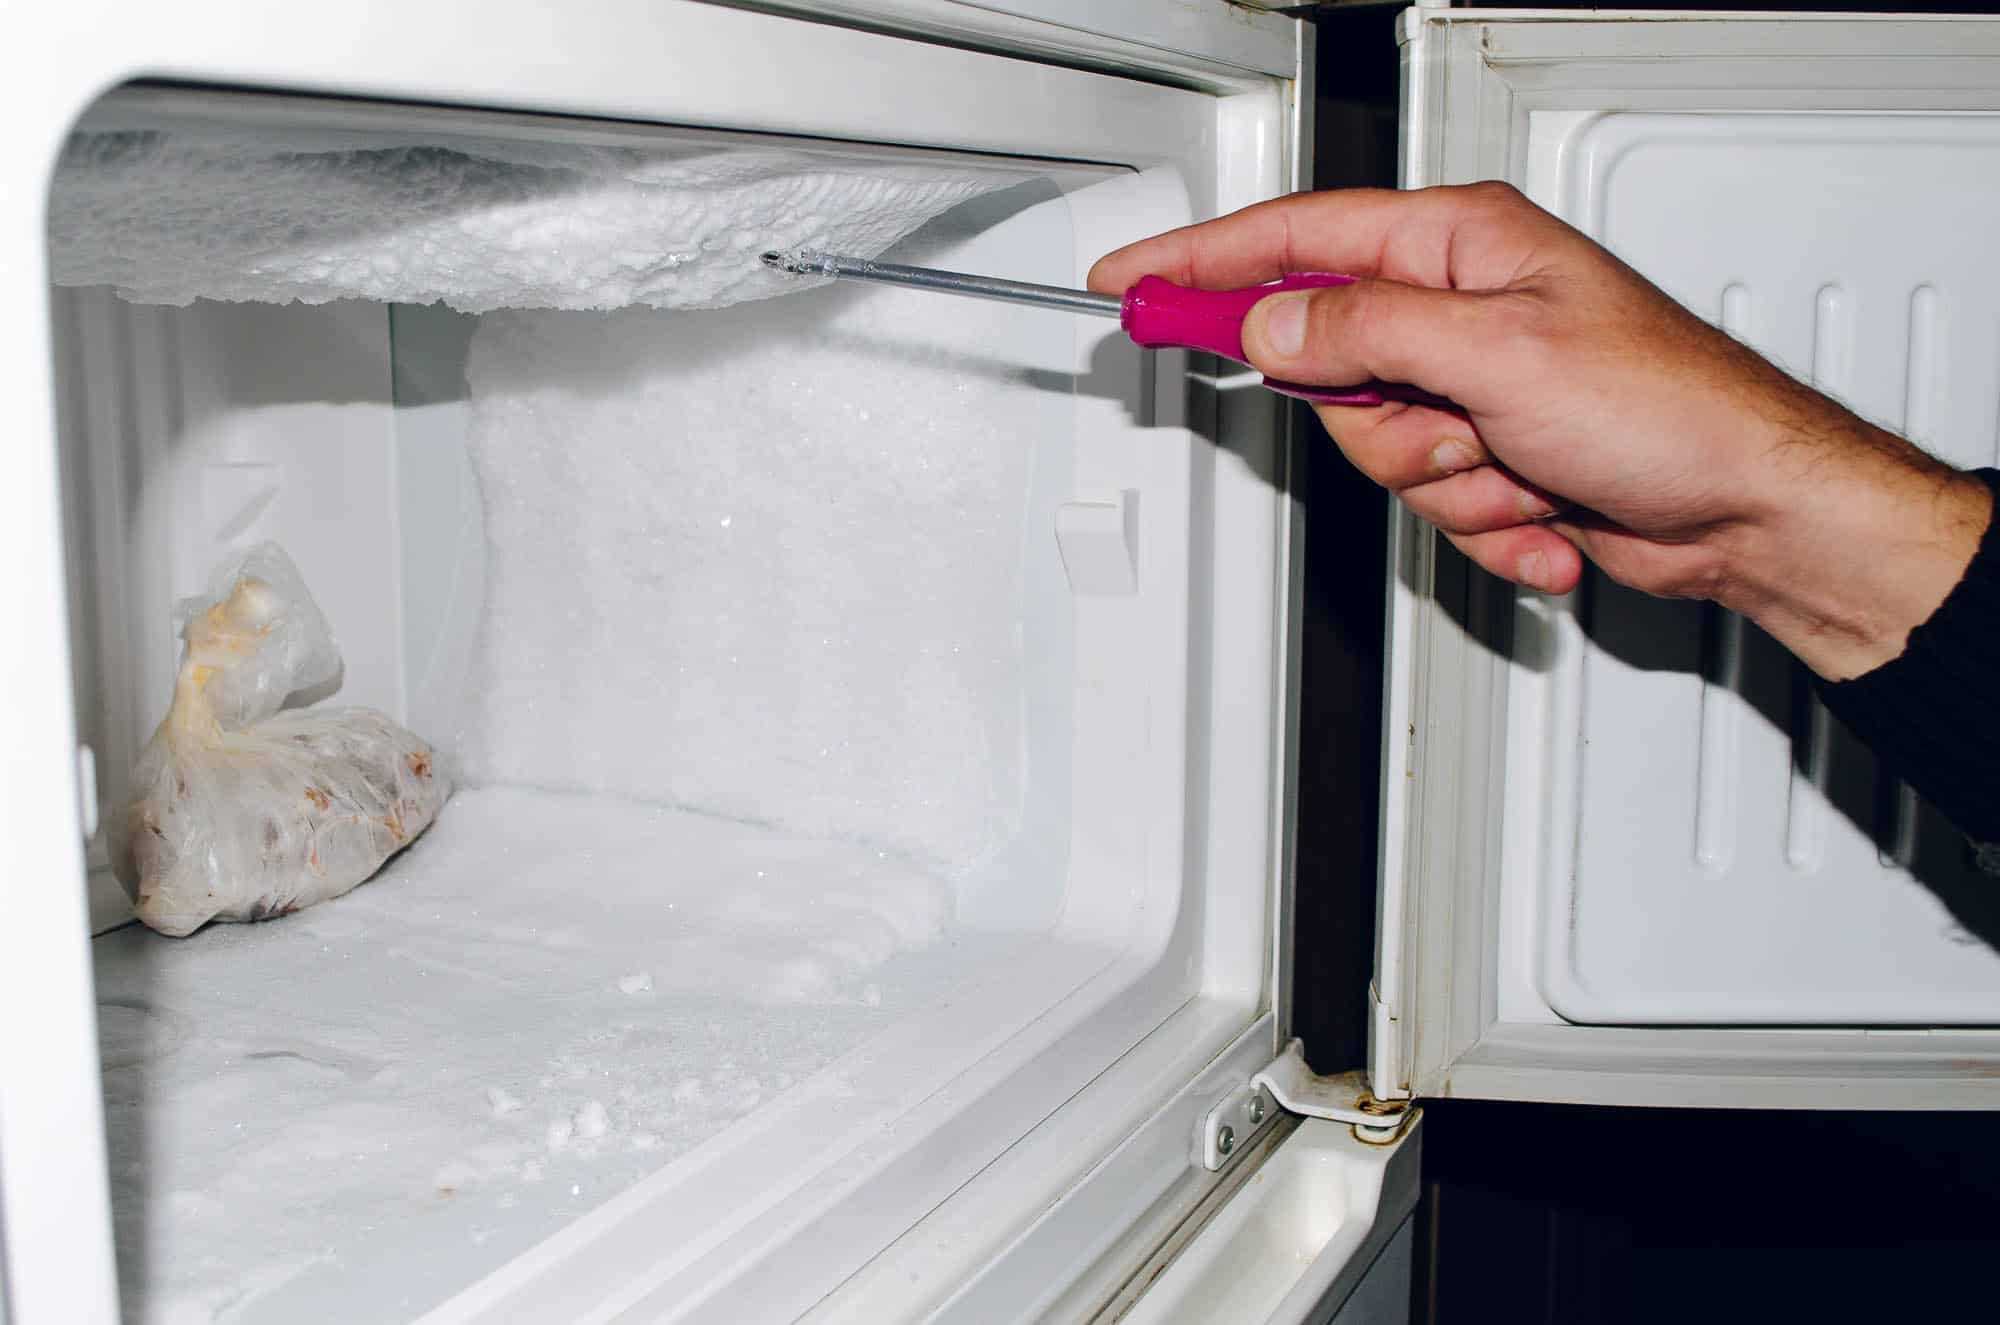 Почему стенки холодильника горячие: какая температура должна быть, нормально что горячие или нет, когда нужно вызывать мастера, какие должны быть теплые, зависит ли это от разных производителей